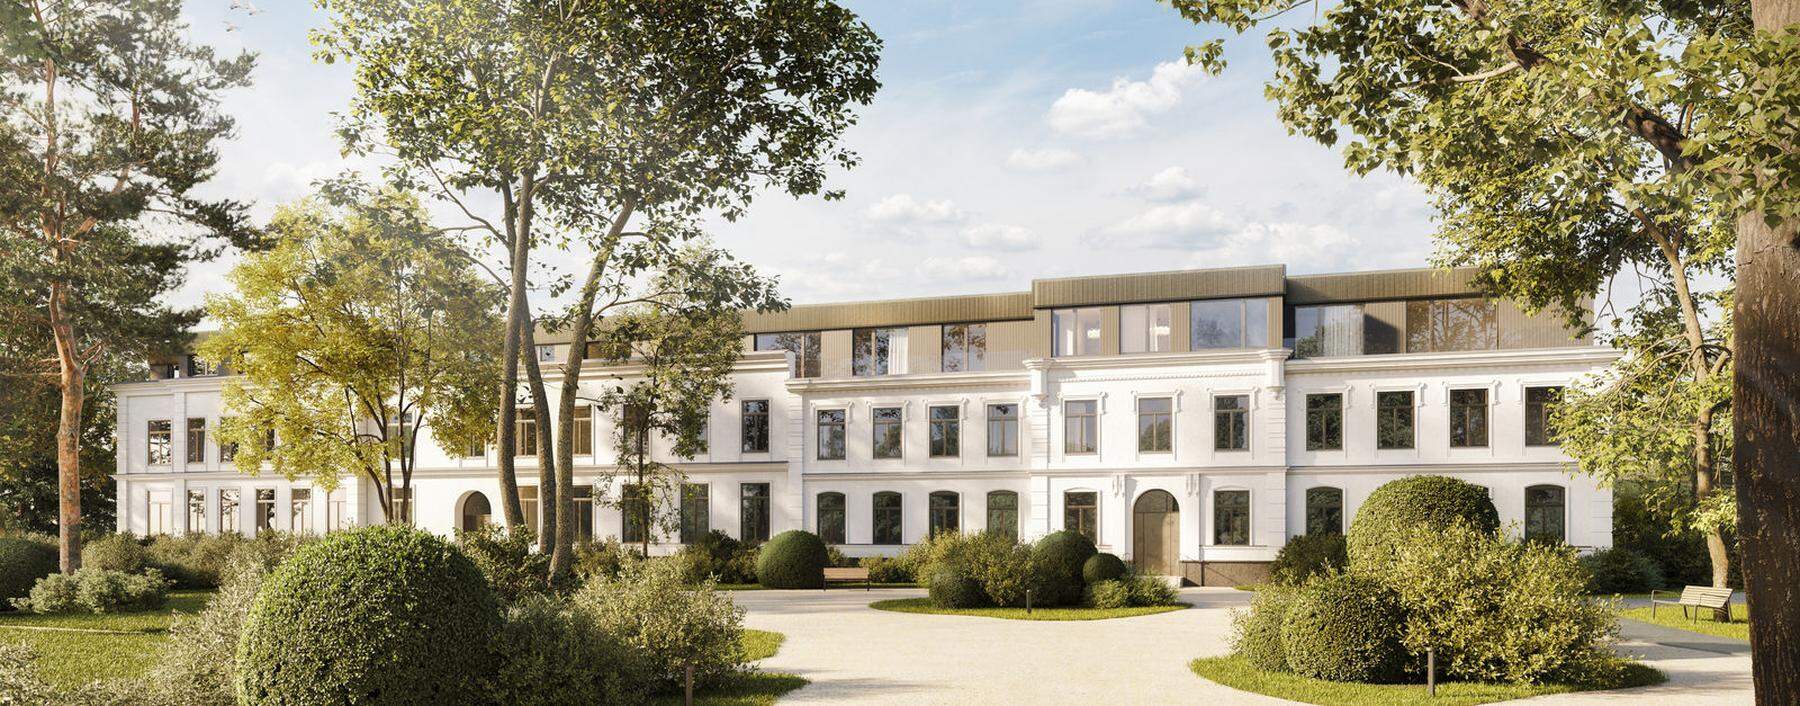 Entwurf von Dietrich Untertrifaller Architekten für das Haupthaus im Projekt „Floriette“, Grünraumkonzept von Kieran Fraser Landcape Design.